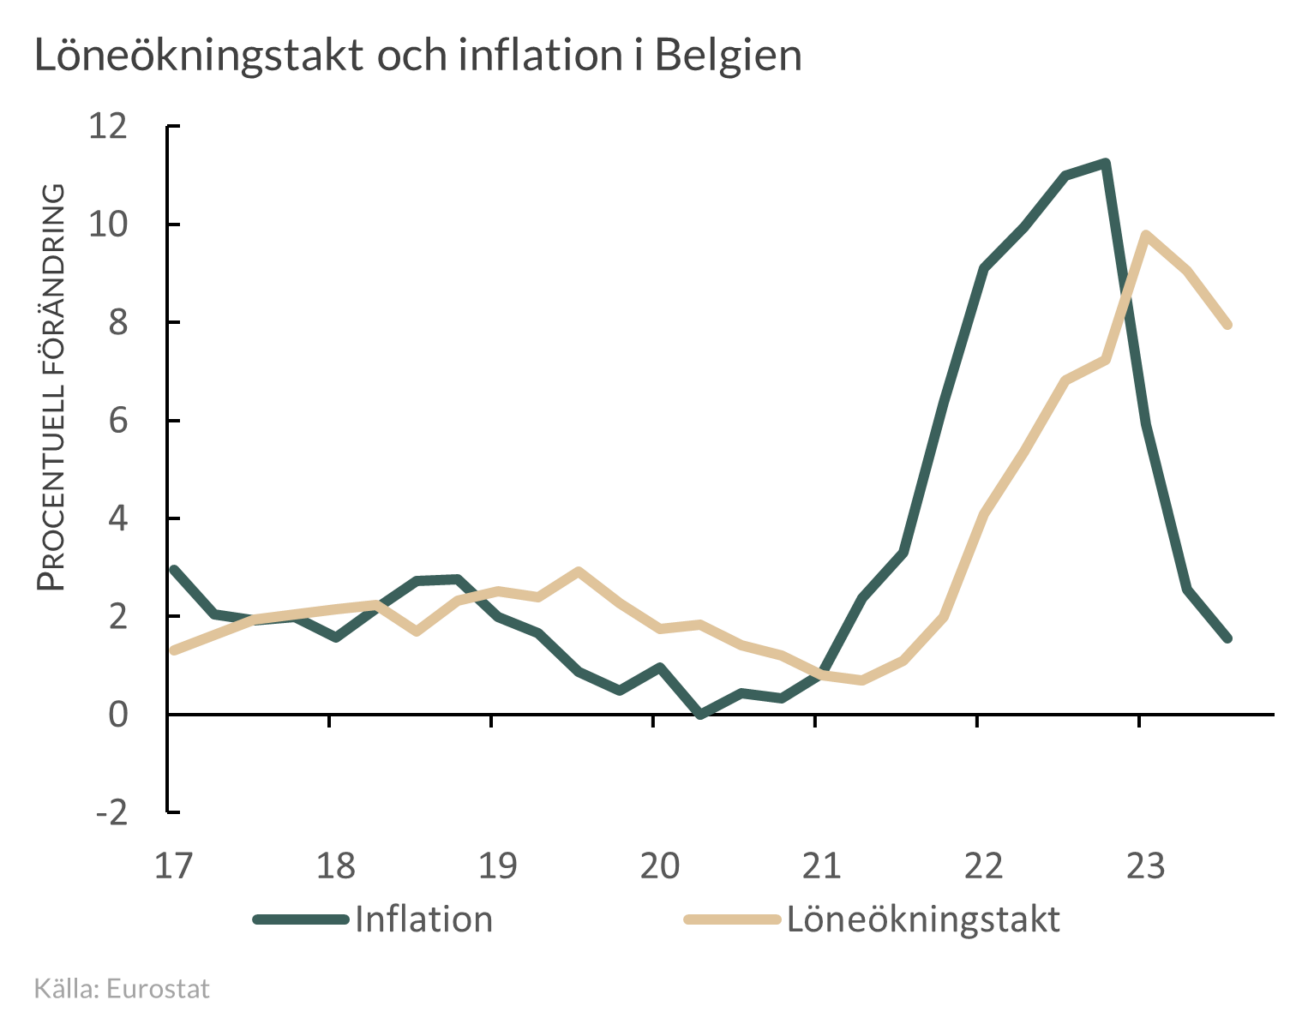 Löne- och inflationsutveckling i Belgien  2017-2023